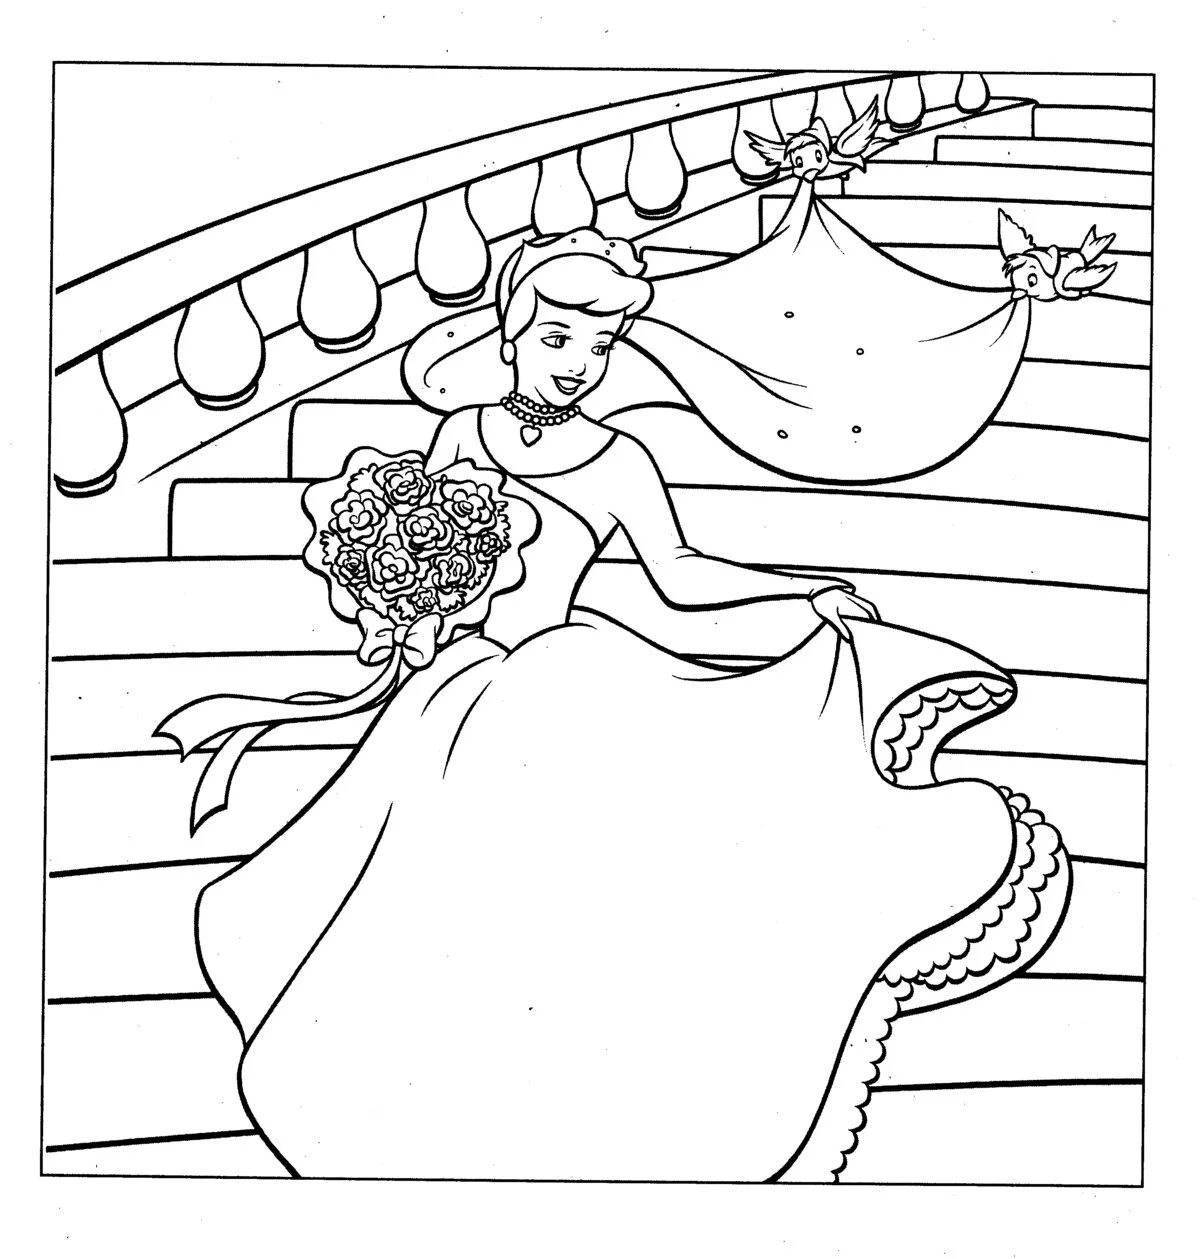 Cinderella dreamy coloring book